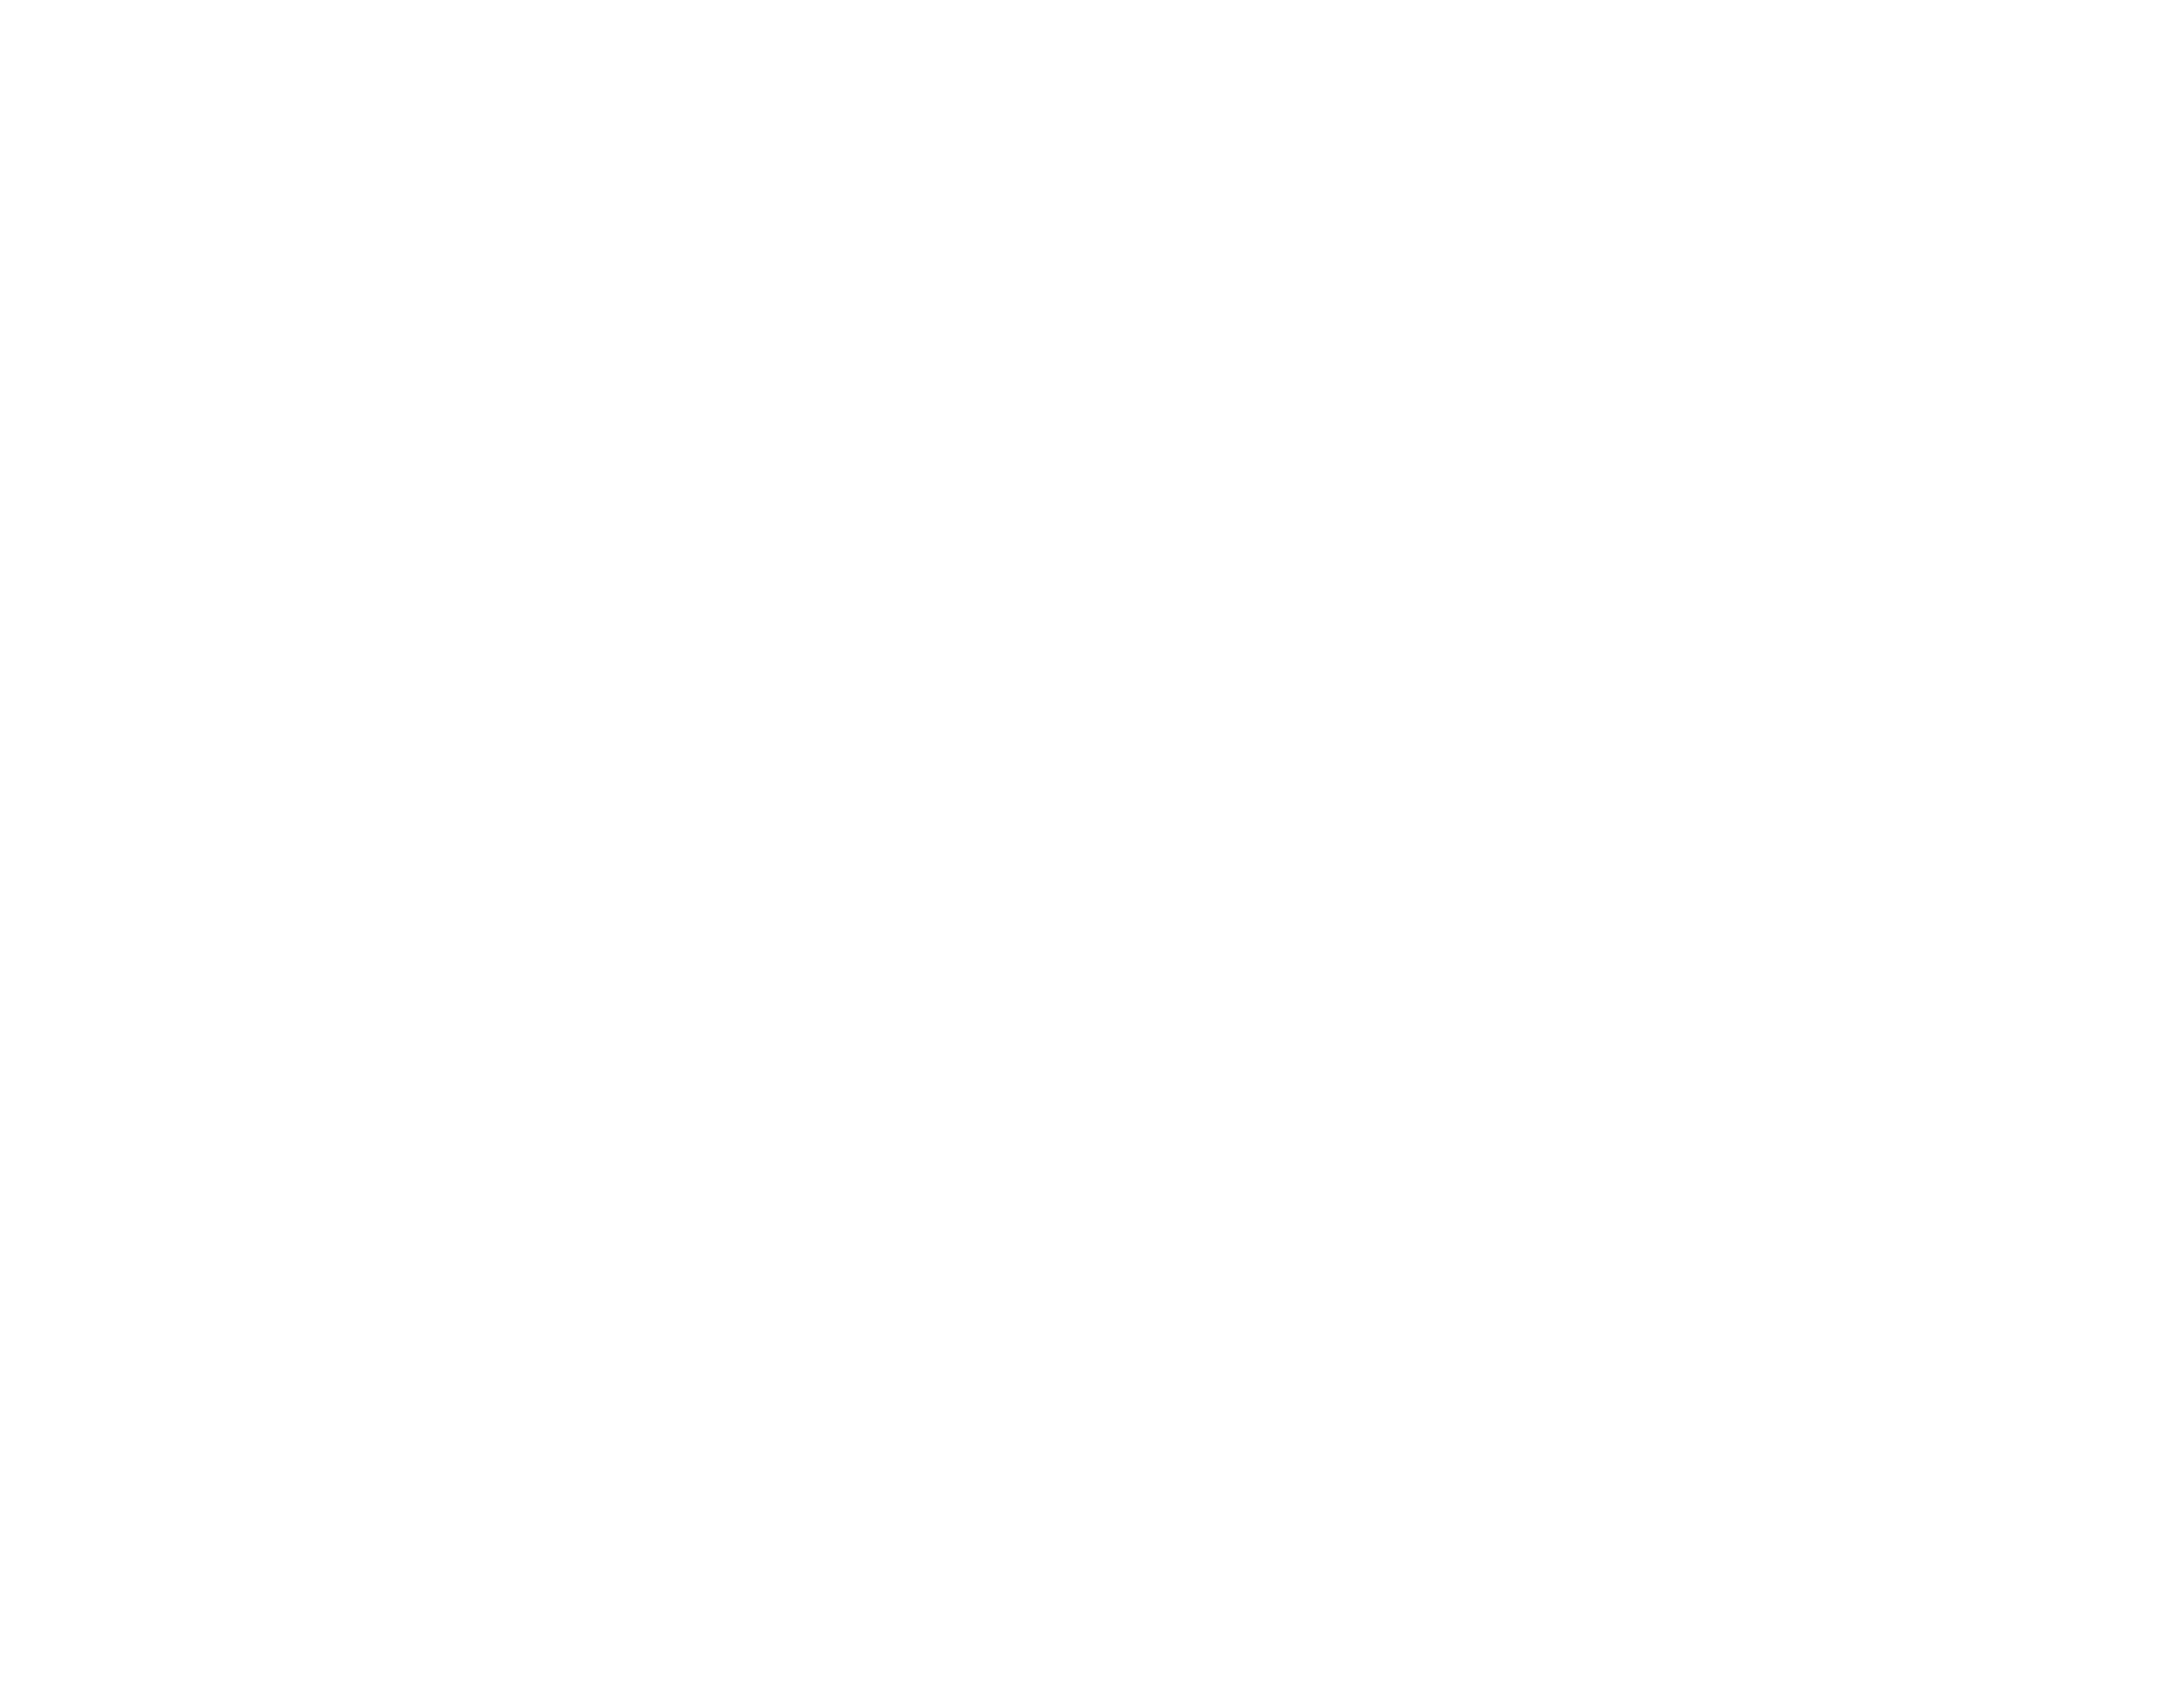 Jeremy Scott Photography